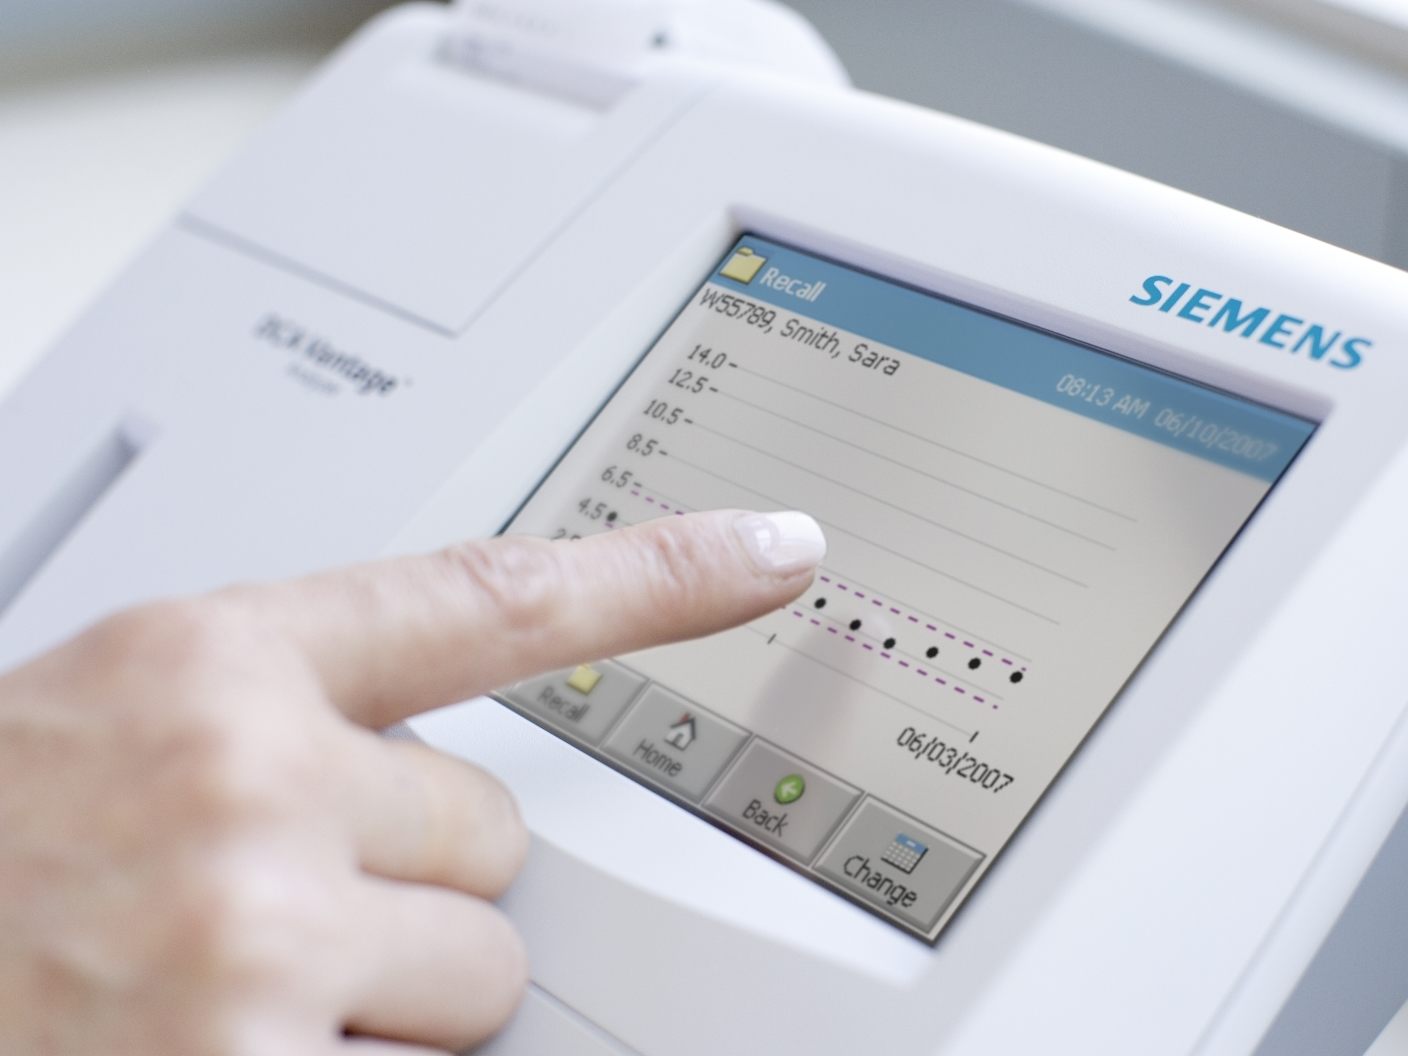 L'analyseur de suivi du diabète Siemens disponible en pédiatrie au CH de Blois